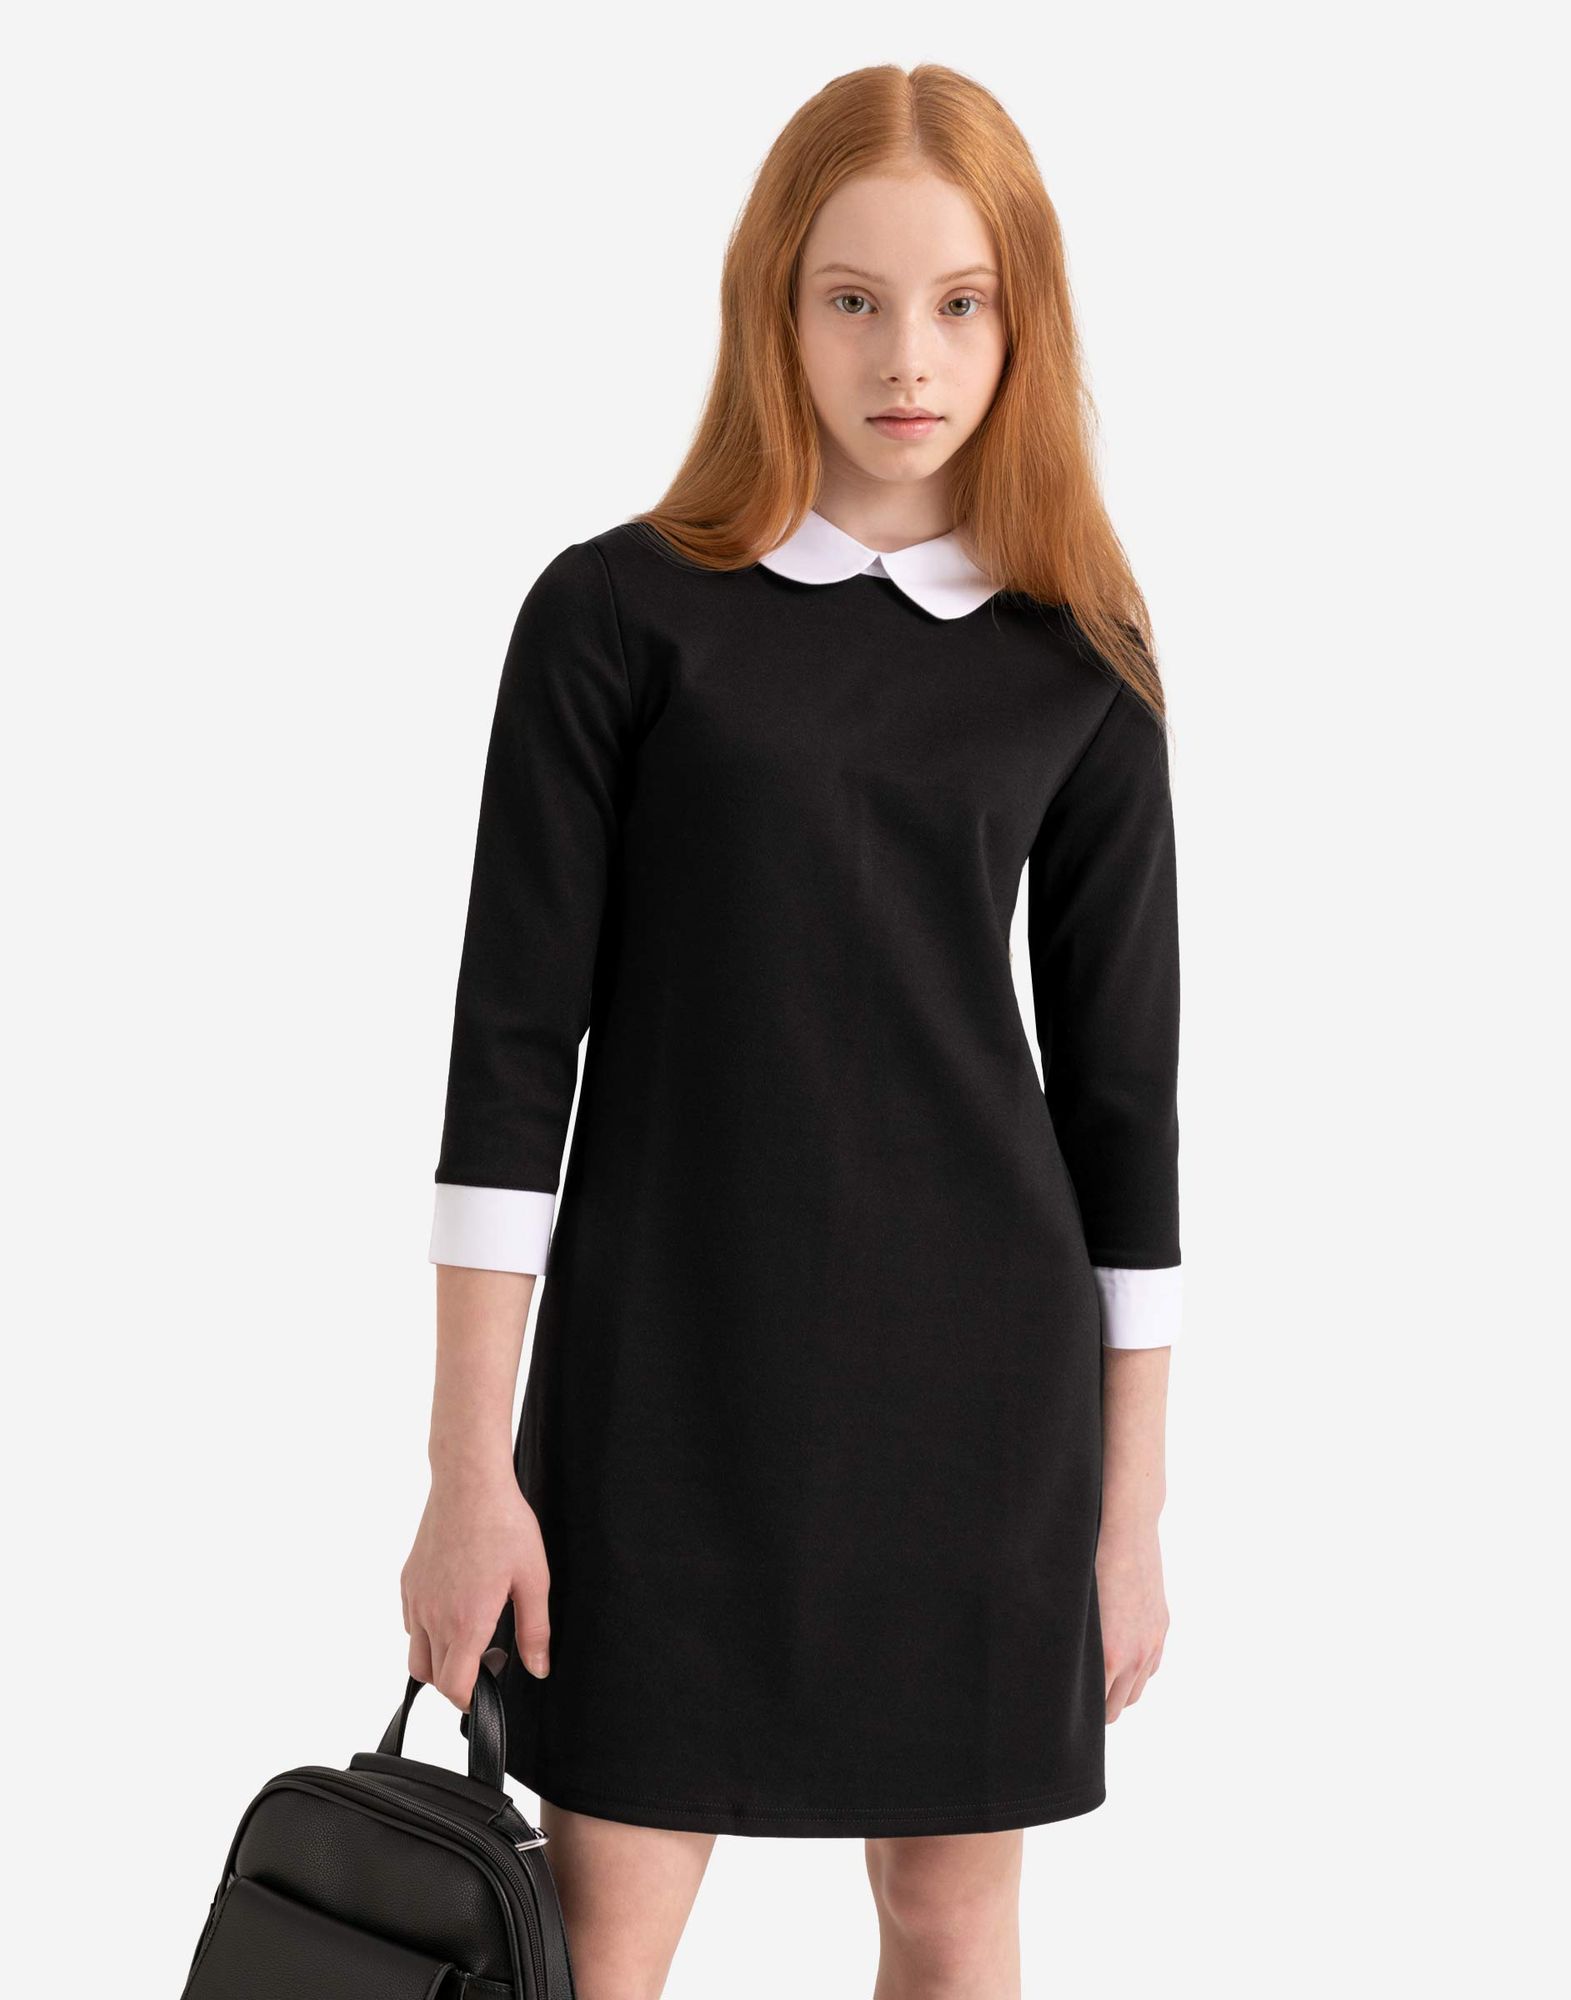 Черное школьное платье с контрастными деталями для девочки-0